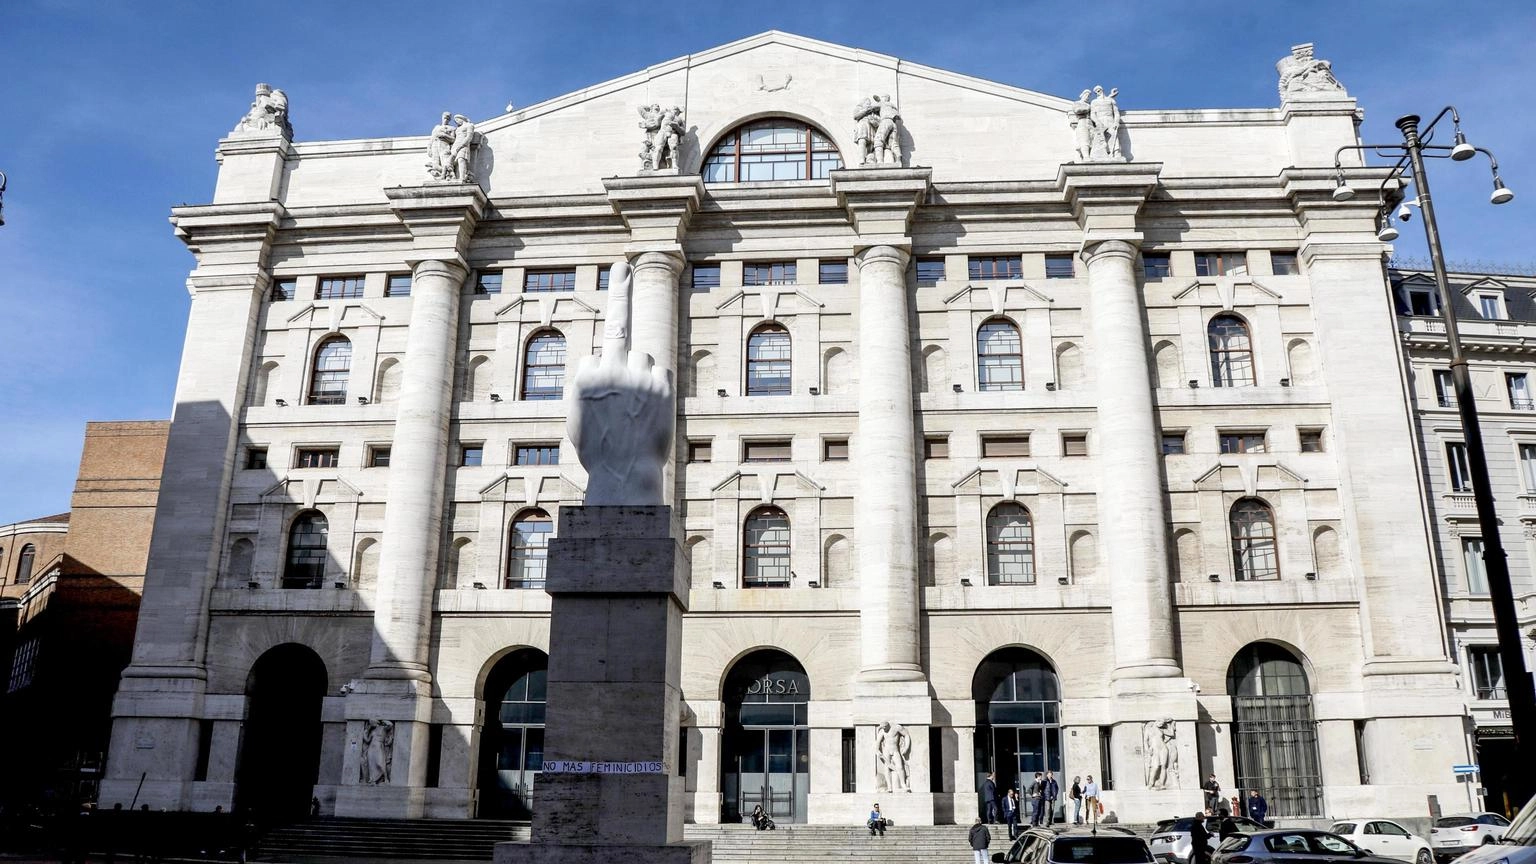 Borsa: Milano bene con le banche dopo Wall street, Europa tiene